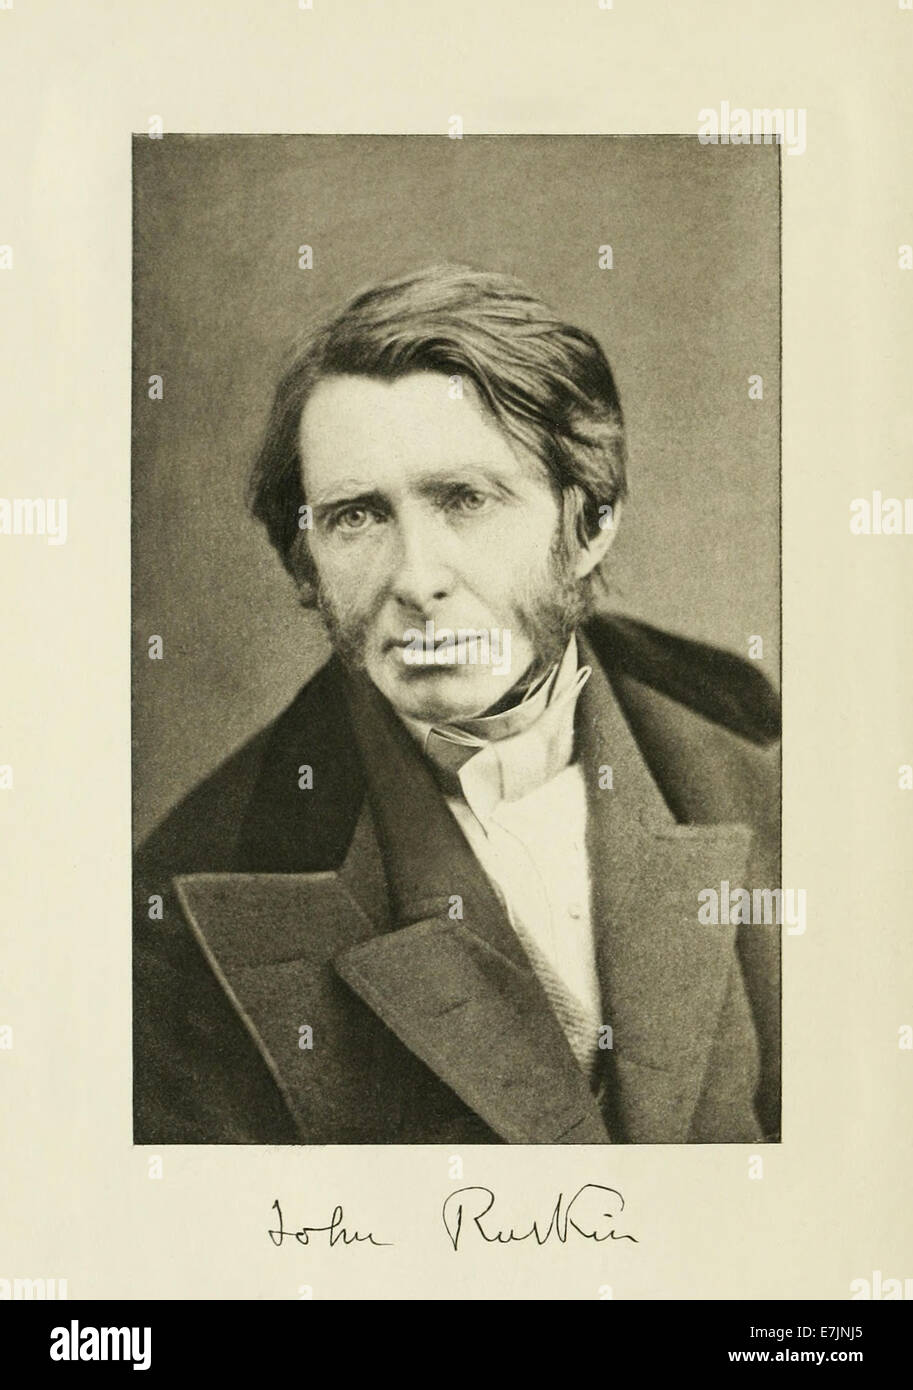 John Ruskin (1819-1900) inglese critico d'arte circa nel 1870 di 51 anni. Vedere la descrizione per maggiori informazioni. Foto Stock